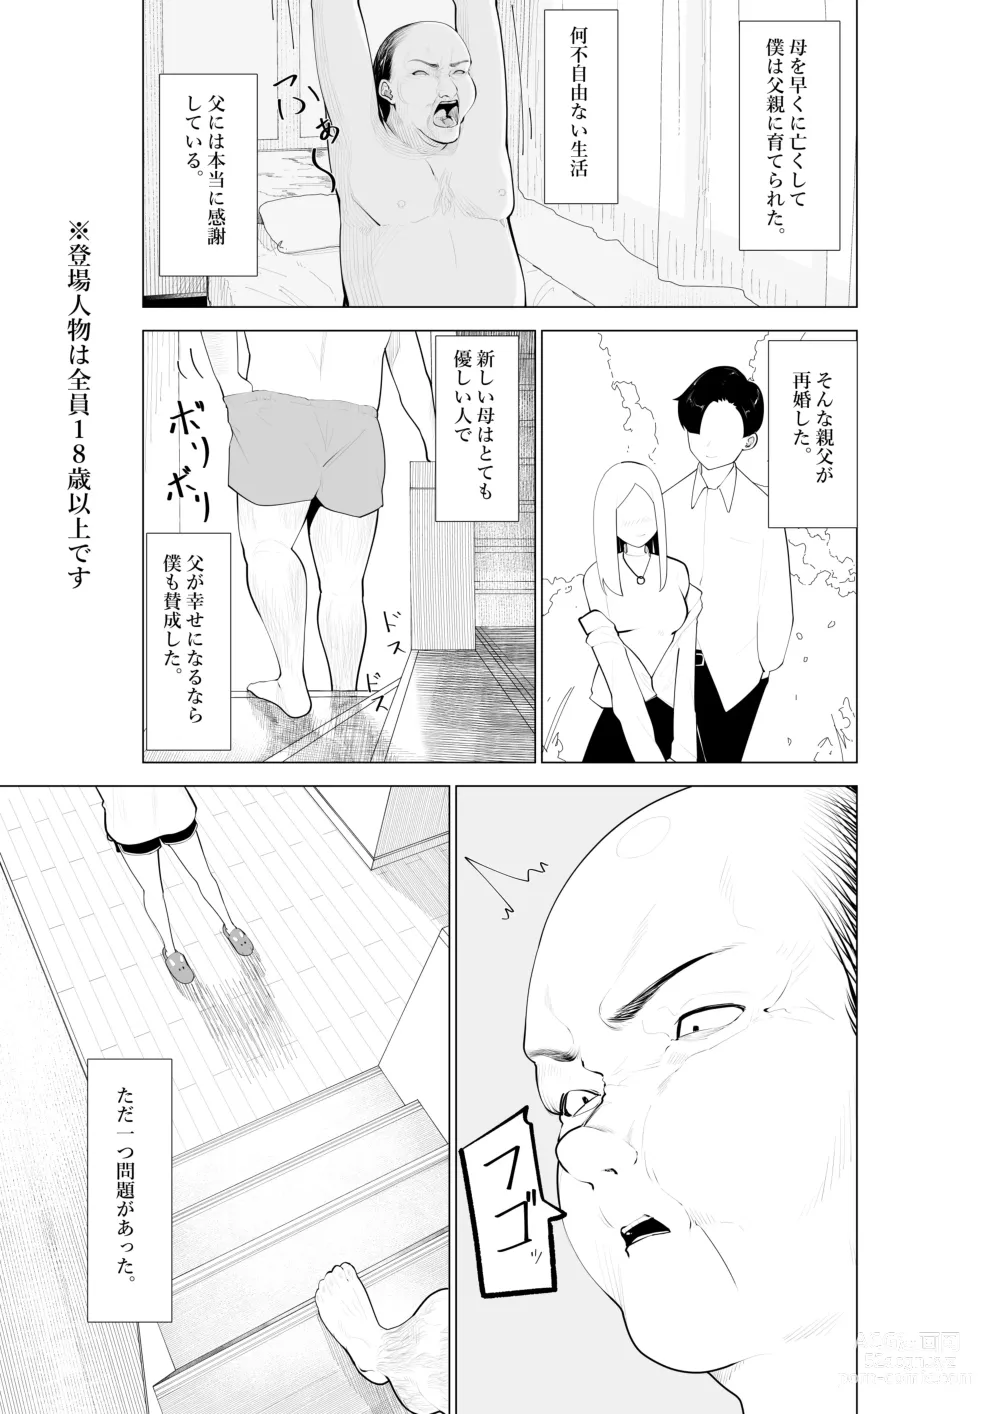 Page 2 of doujinshi Fuzaketa Gimai ni ie no Rūru o Oshiete Mita